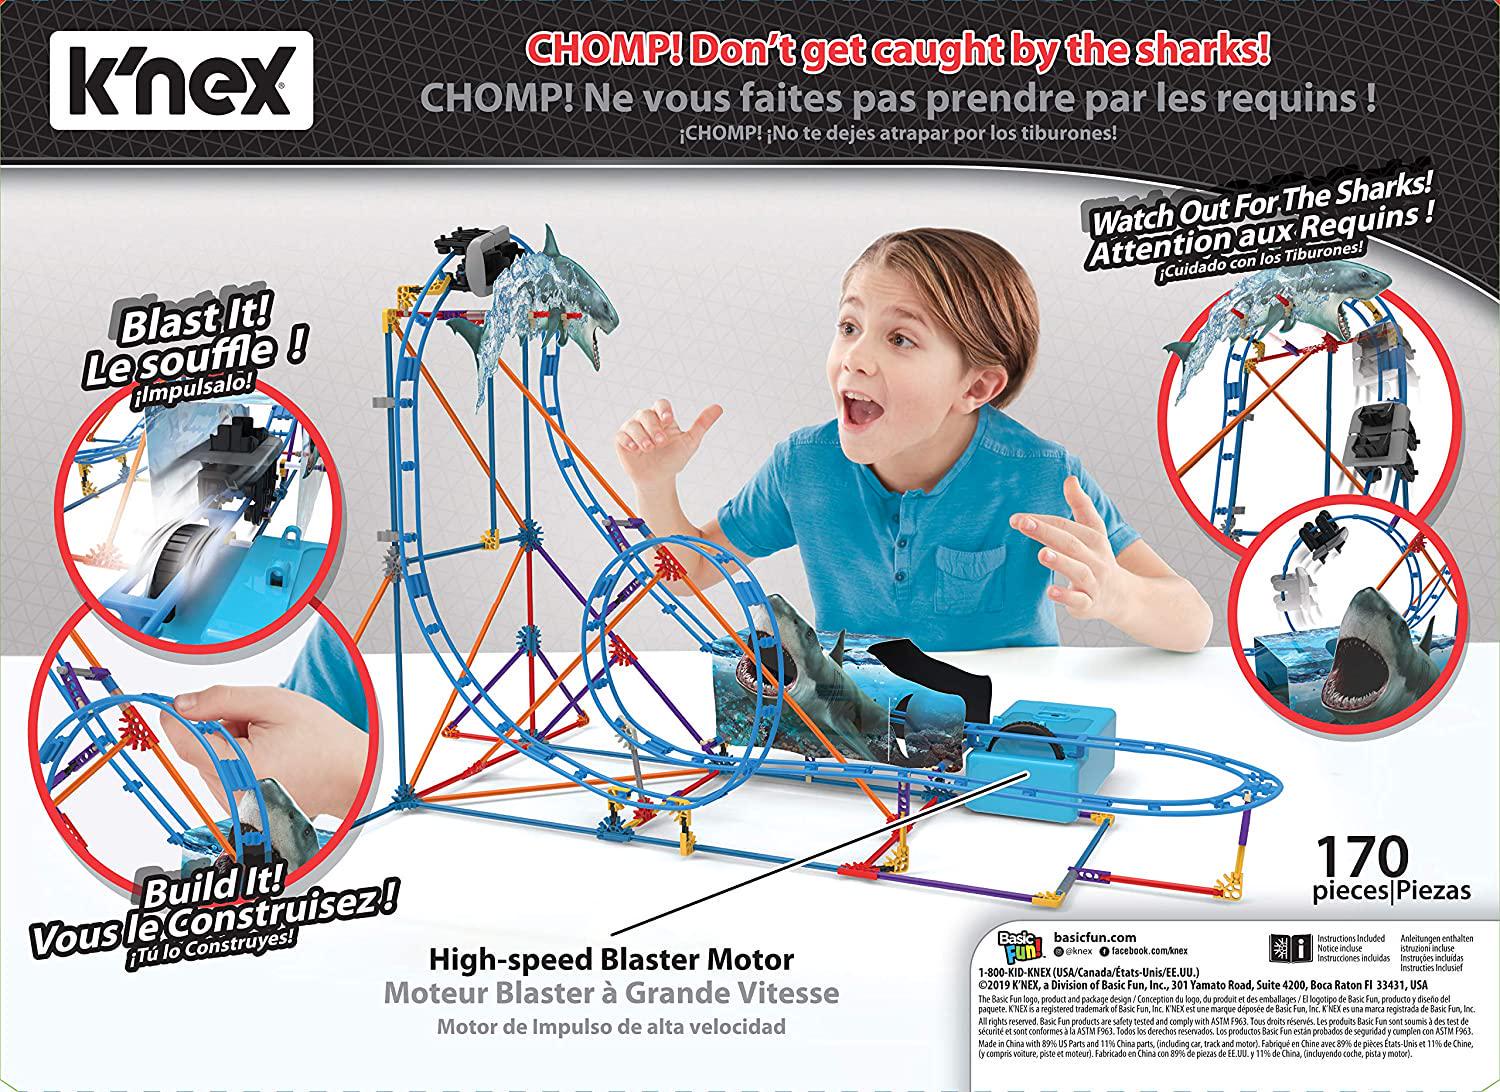 K'nex, Knex 34041 Tabletop Thrills Shark Attack Coaster Building Set